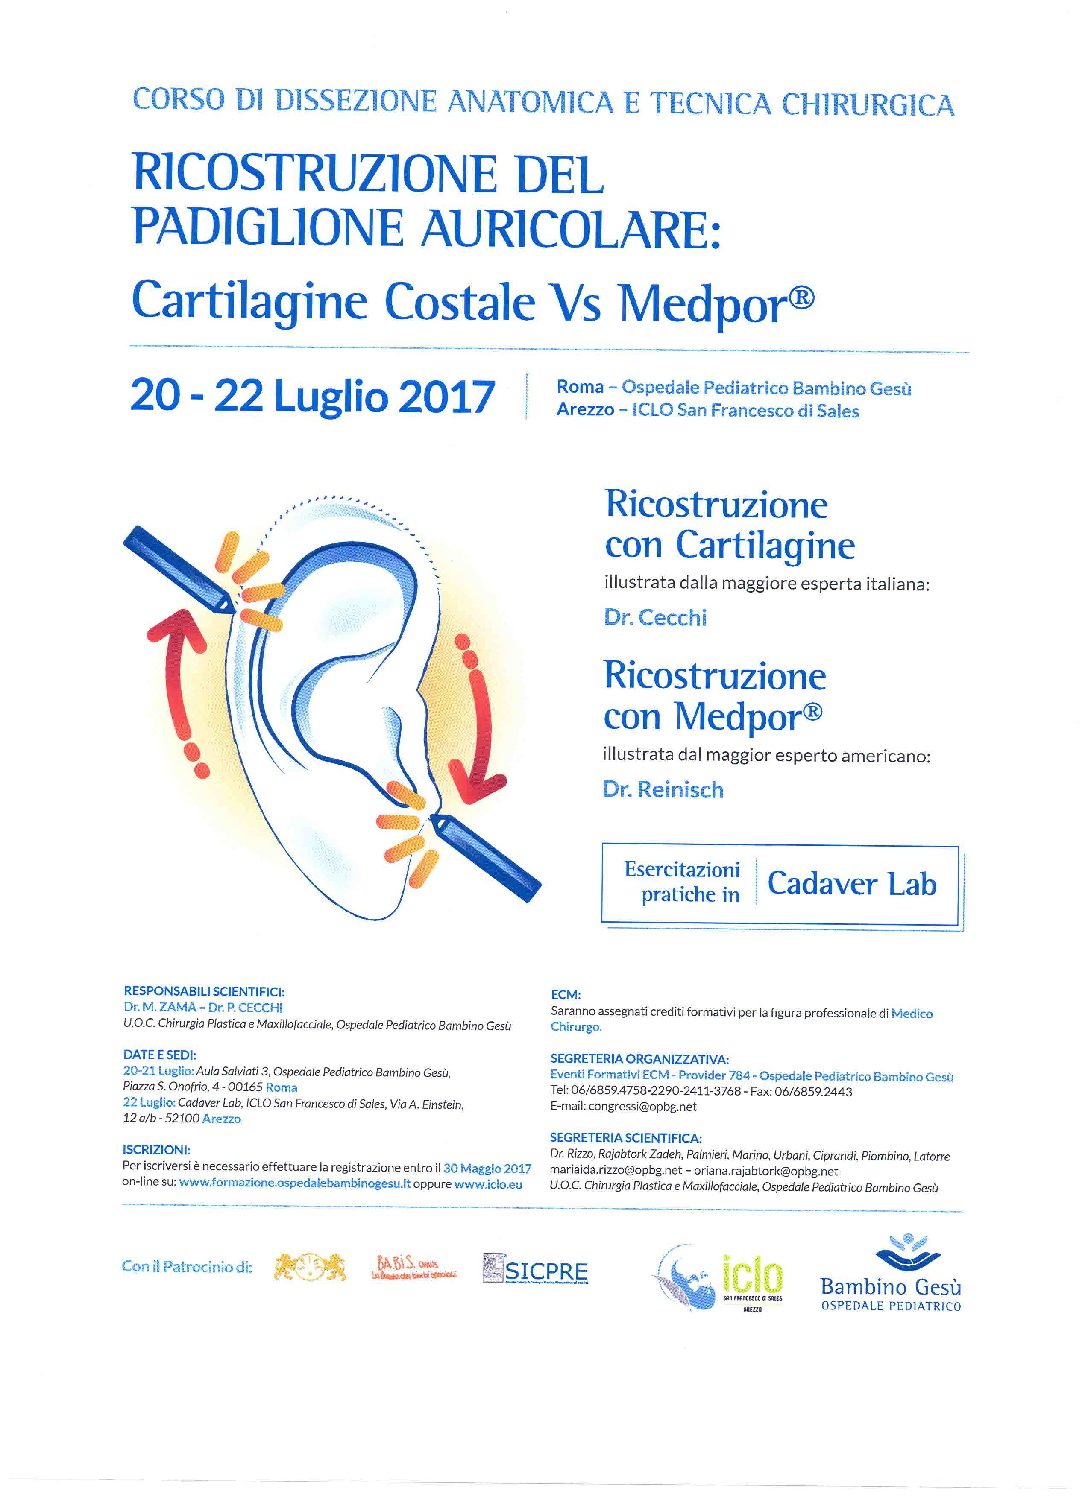 CORSO “RICOSTRUZIONE DEL PADIGLIONE AURICOLARE: Cartilagine Costale Vs Medpore”. 20- 22 LUGLIO 2017